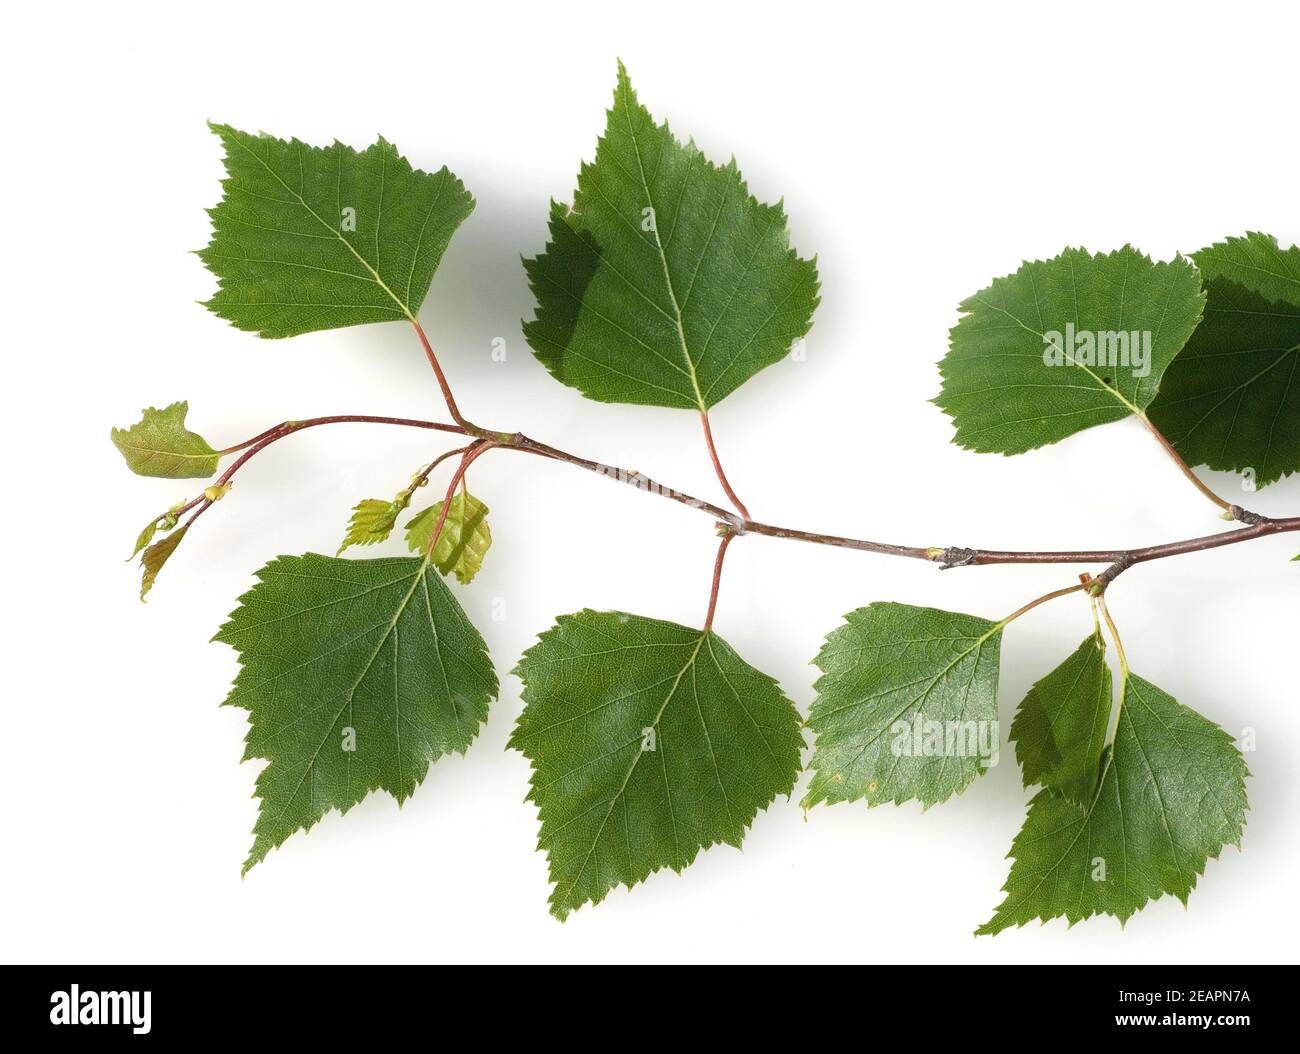 Birkenblaetter Vom Birkenbaum, Lateinischer Name Betula, Stockfoto